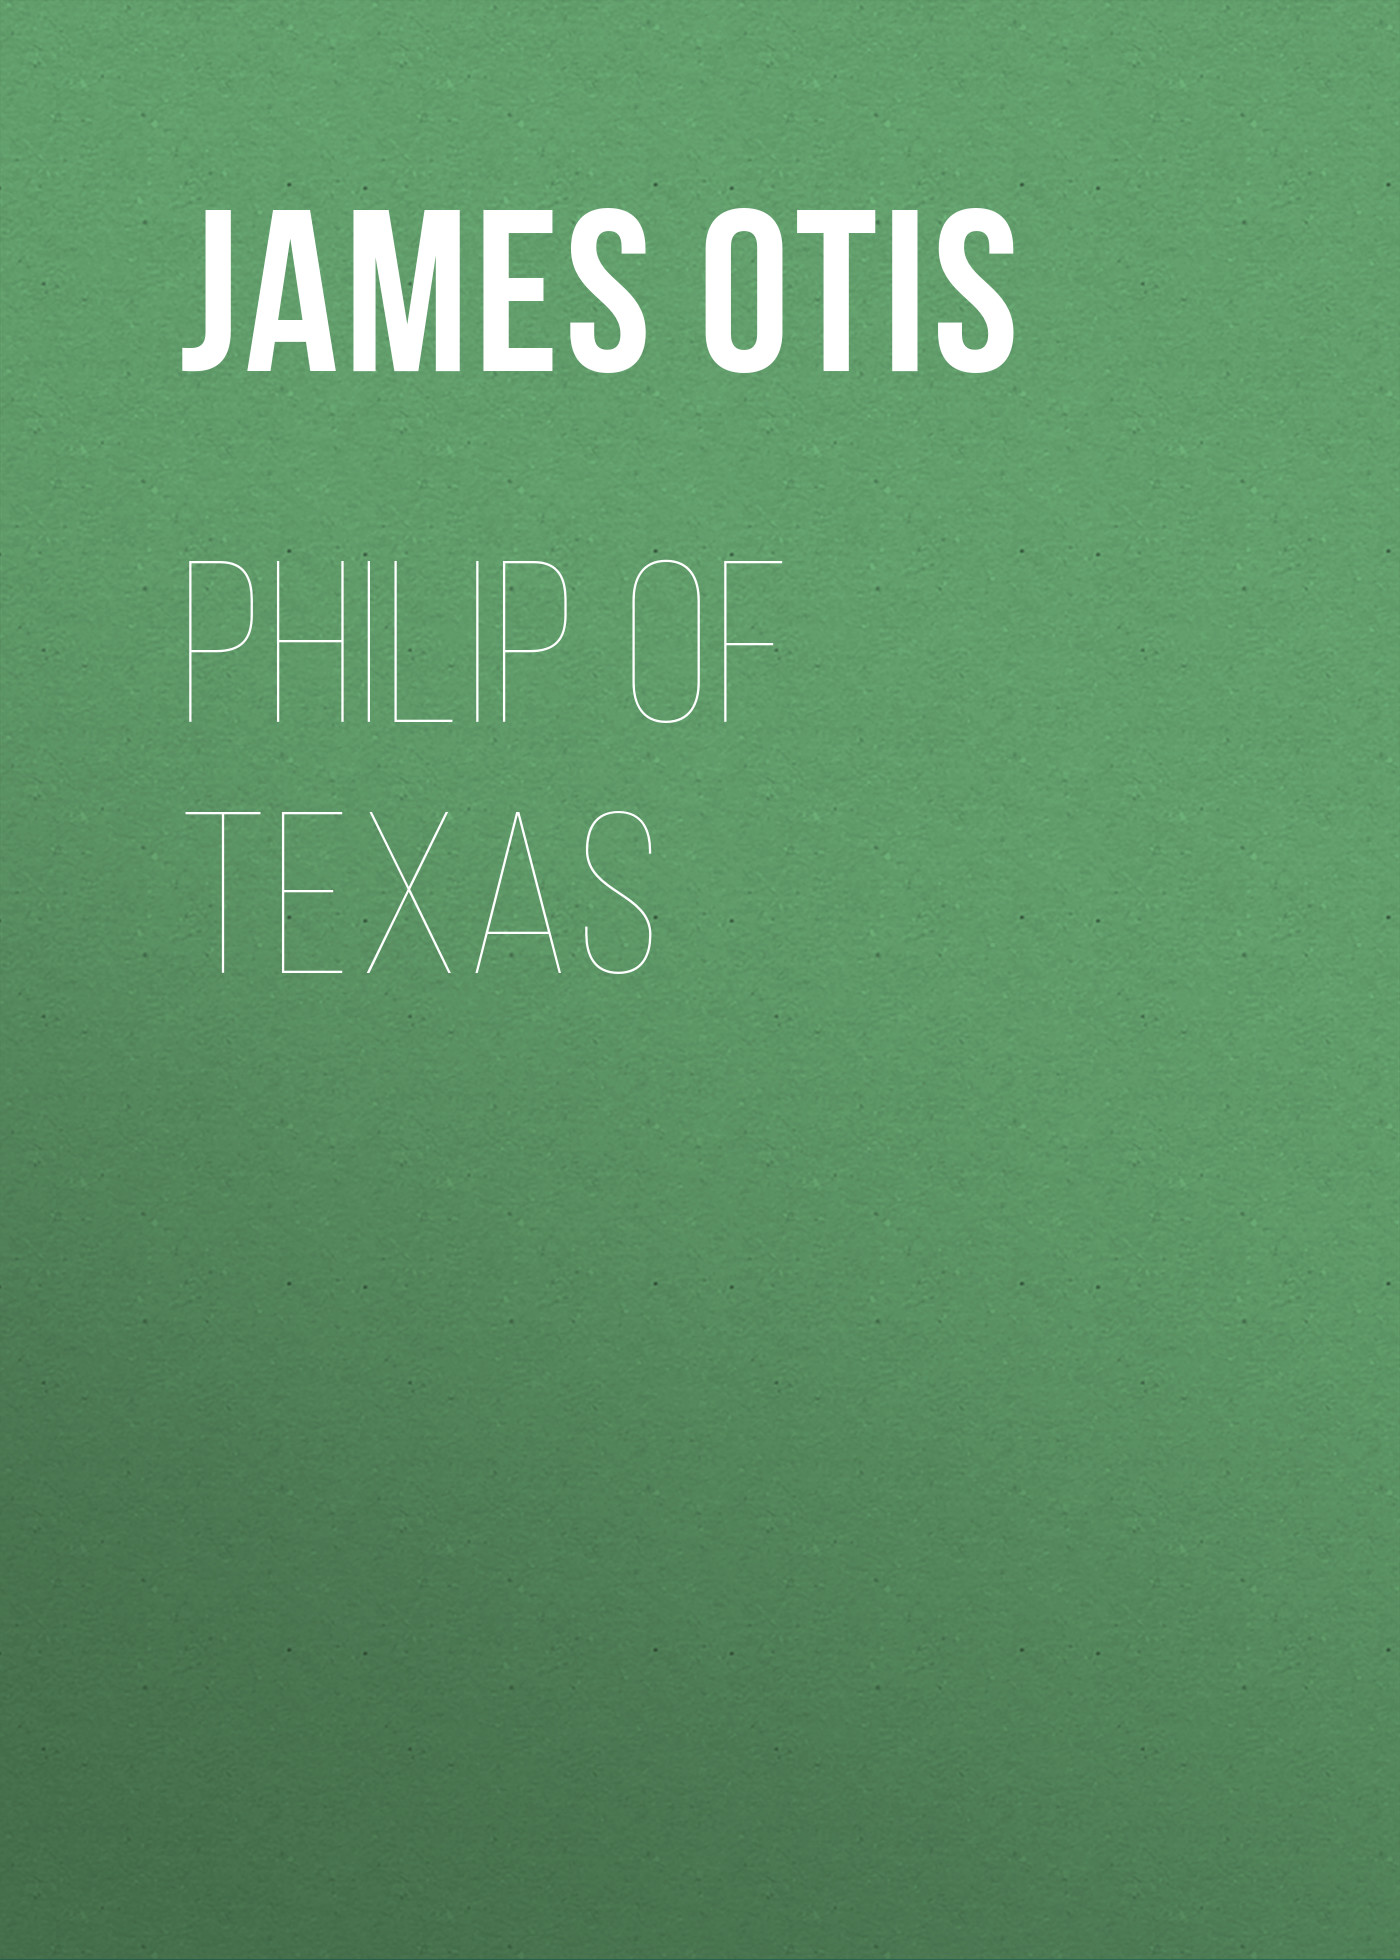 Книга Philip of Texas из серии , созданная James Otis, может относится к жанру Зарубежная классика, Иностранные языки. Стоимость электронной книги Philip of Texas с идентификатором 23156931 составляет 5.99 руб.